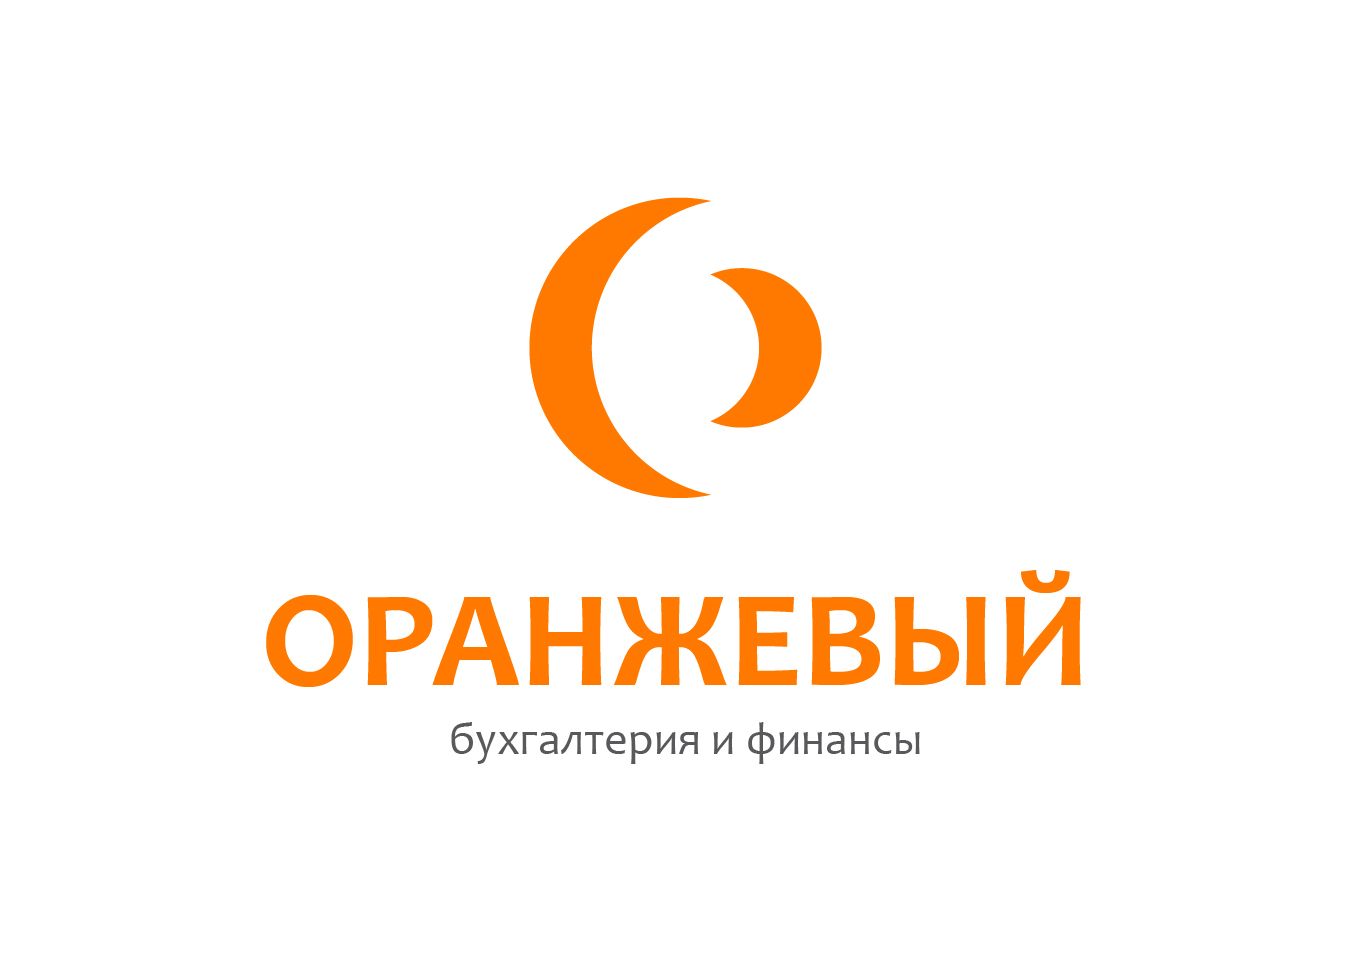 Логотип Финансовой Организации - дизайнер this_optimism